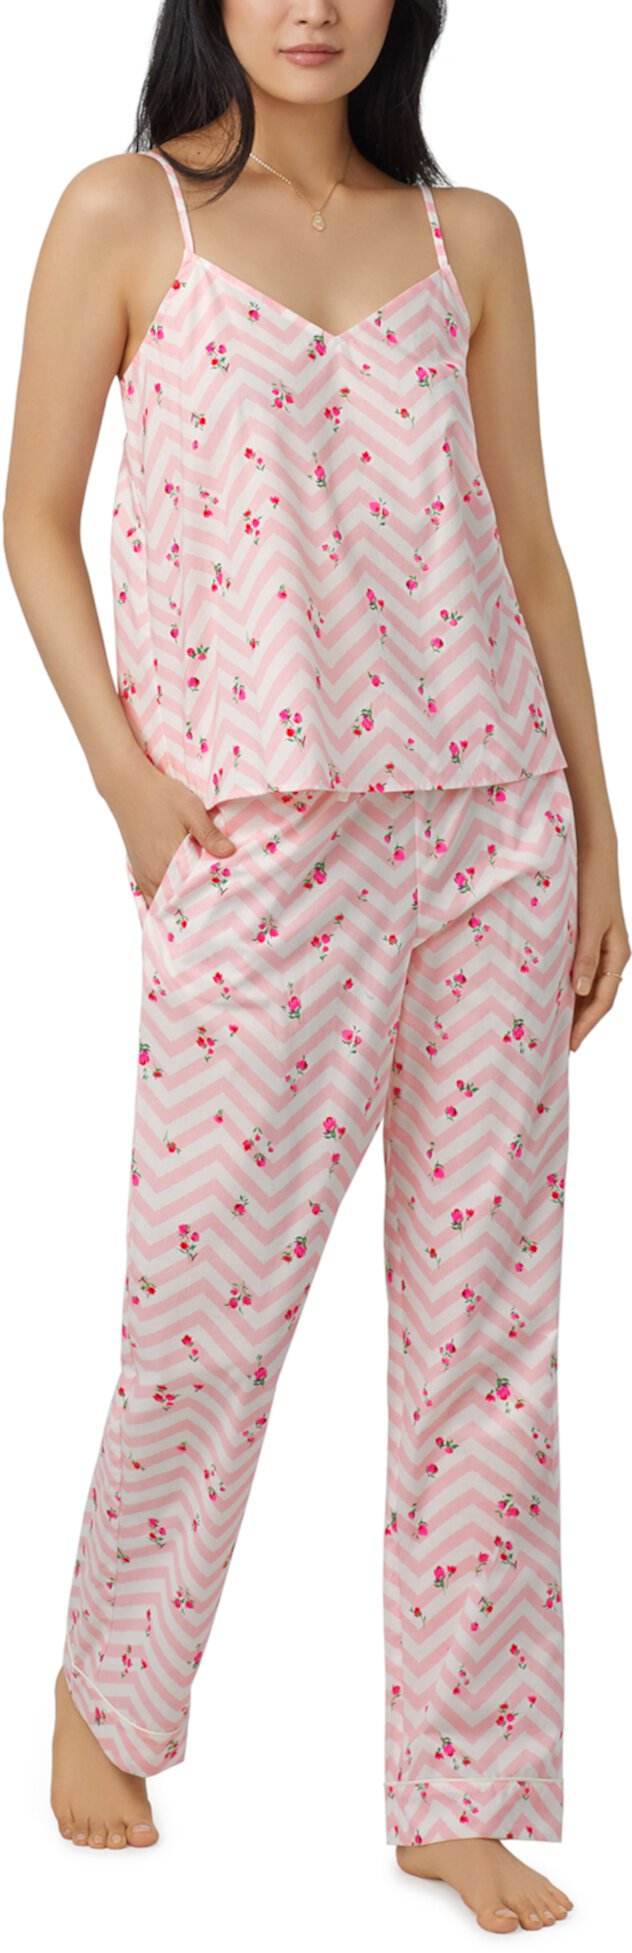 Пижамный комплект с брюками-майками BedHead